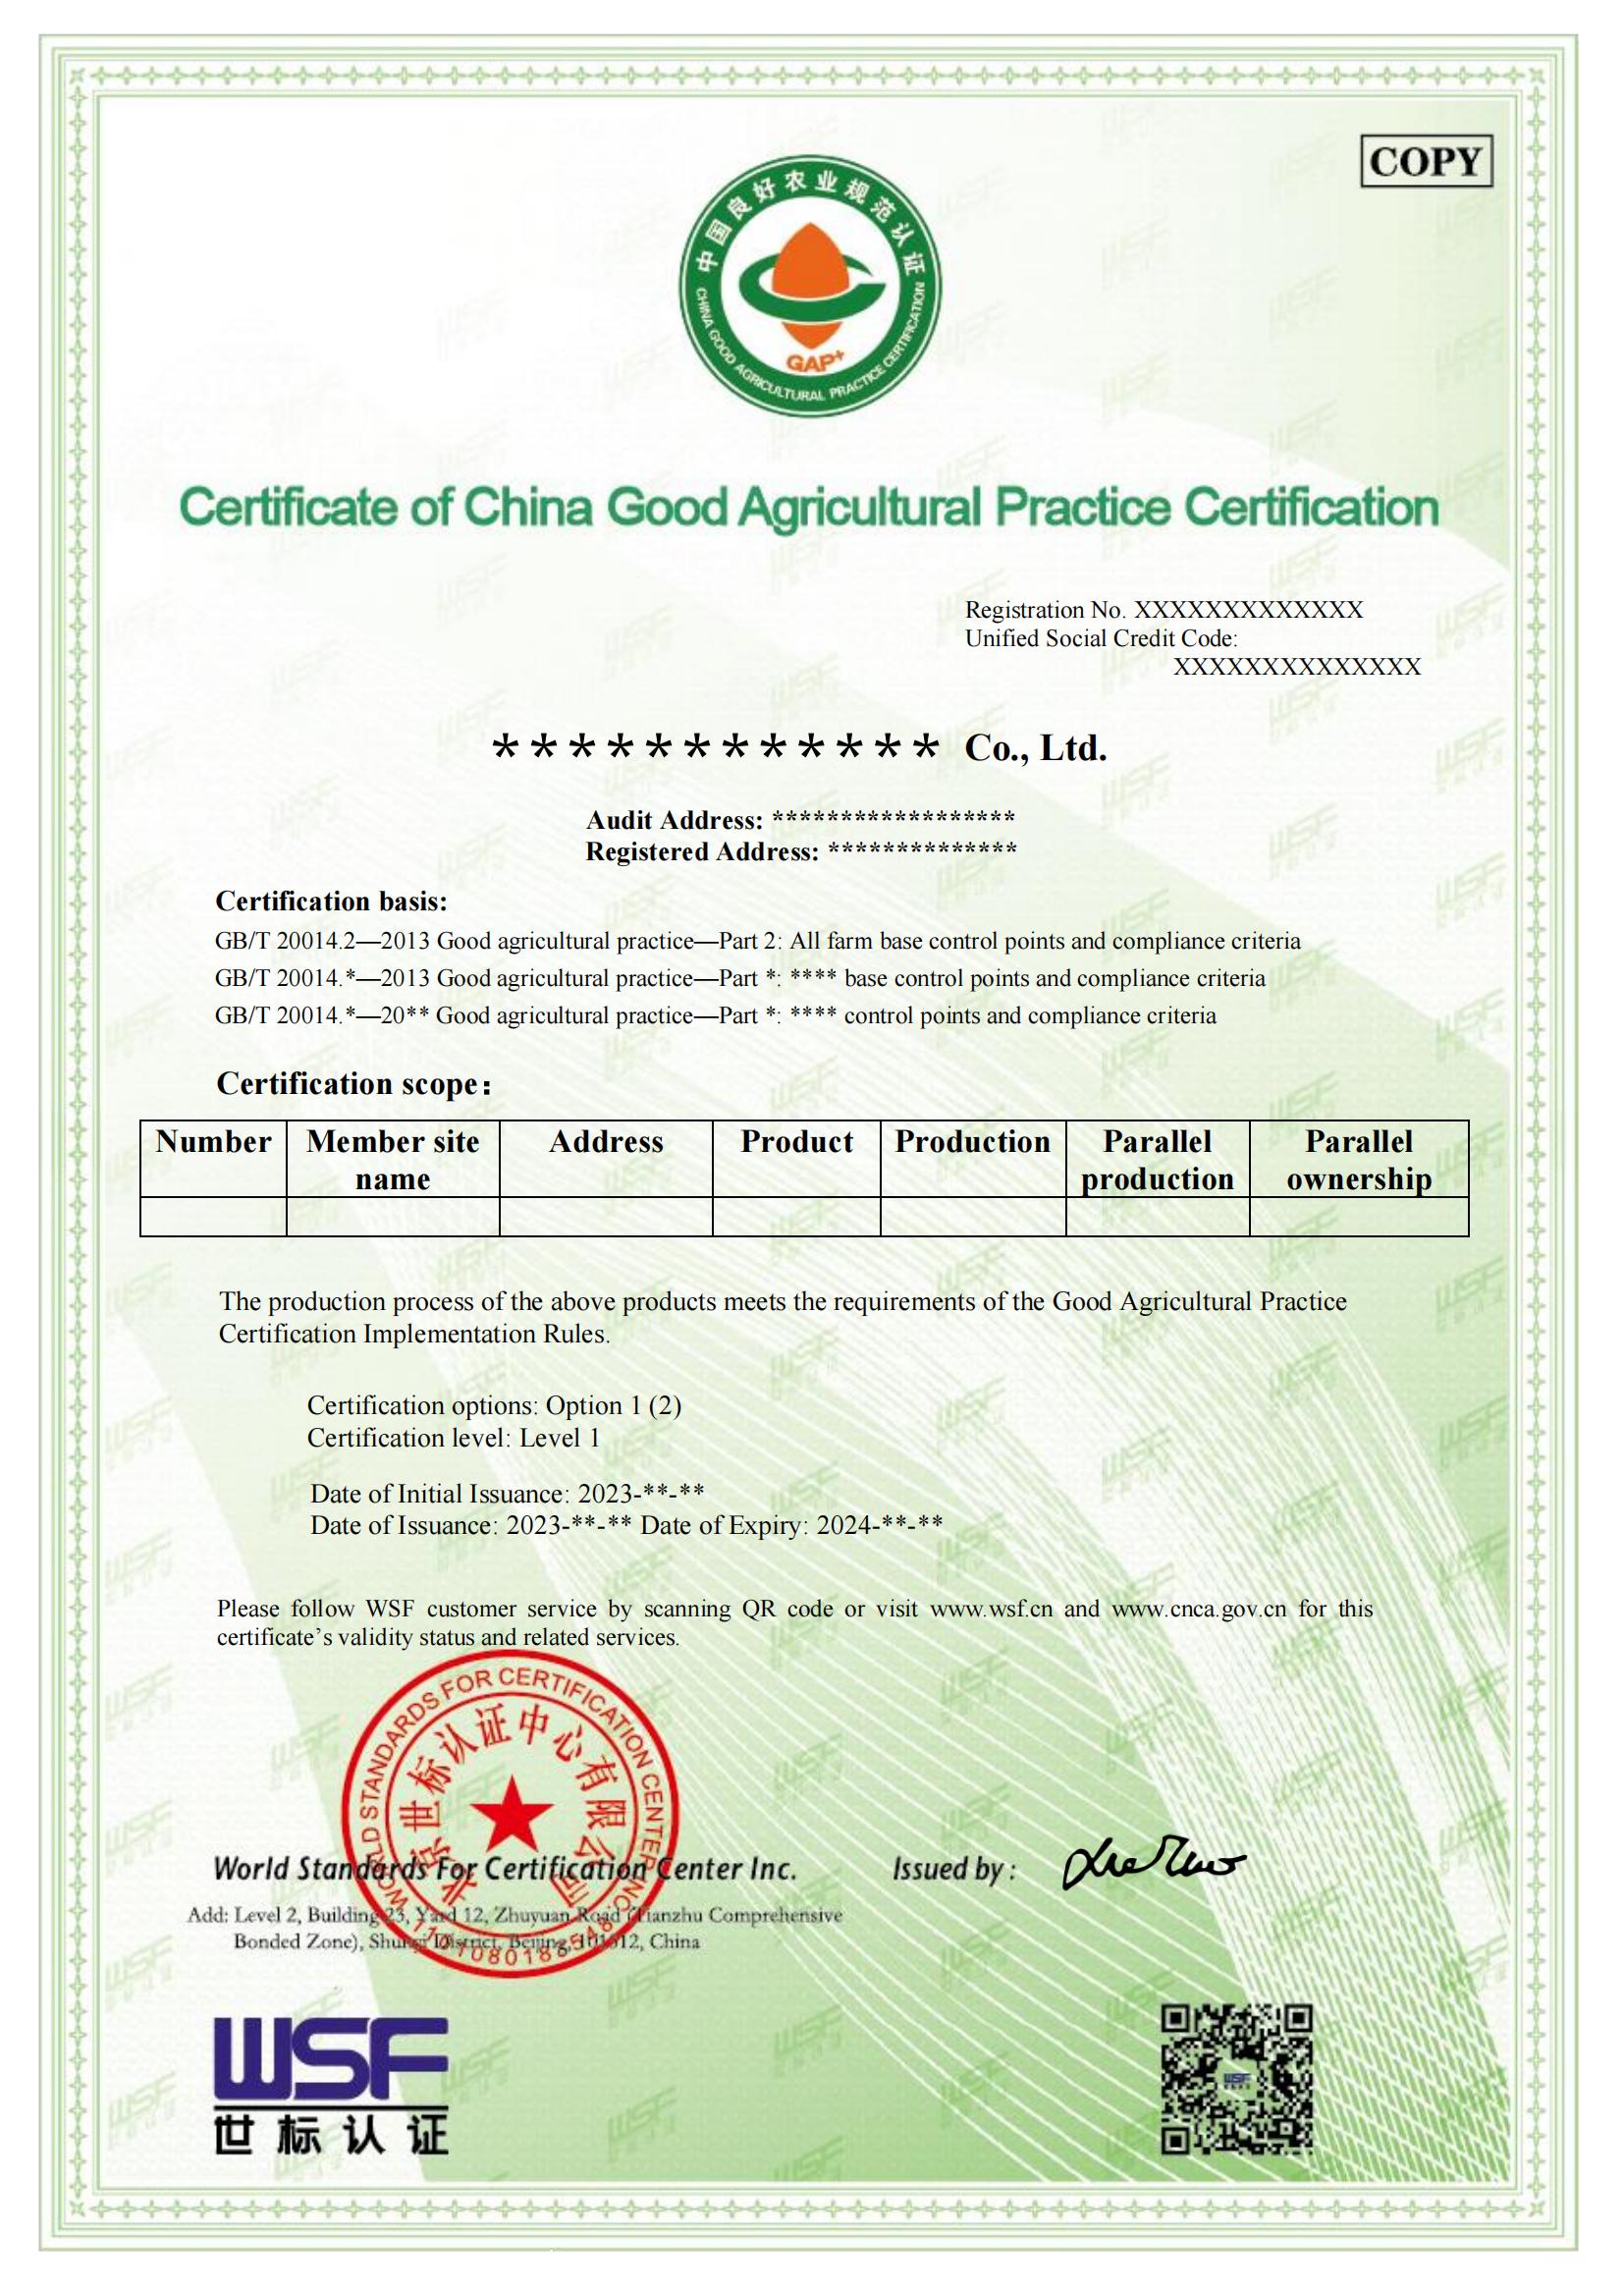 良好农业规范GAP+认证证书样本-英文_00.jpg